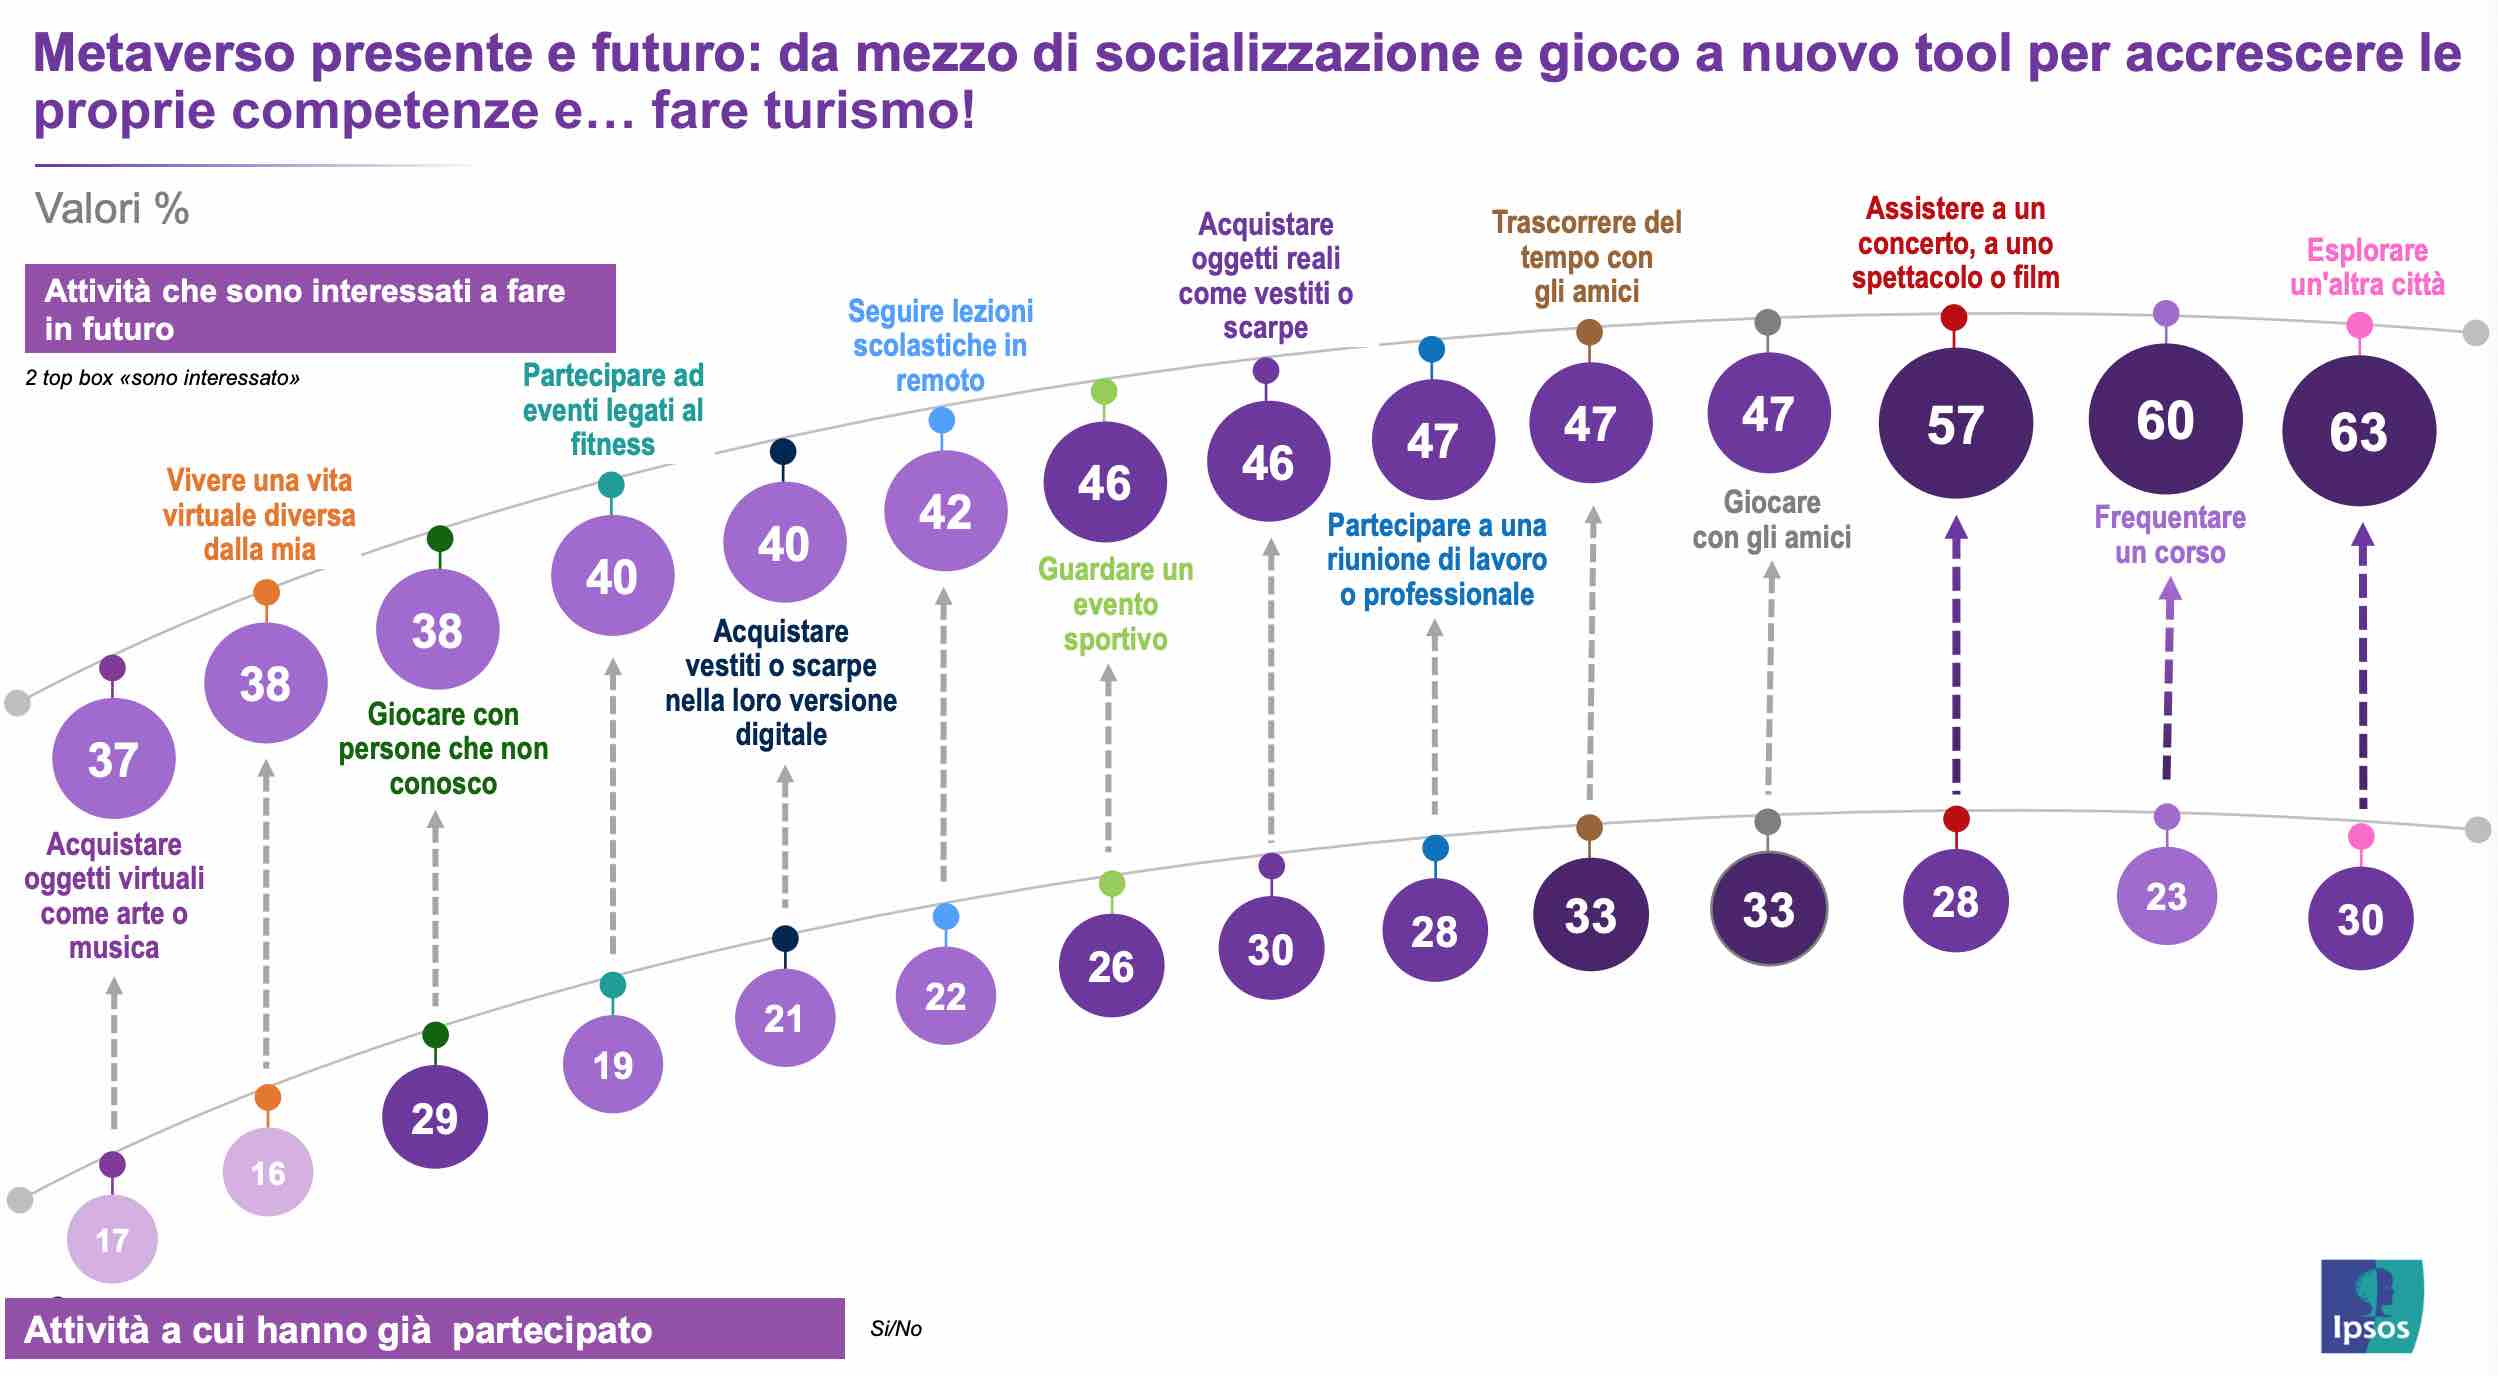 italiani e metaverso - le attività e l'interesse 2023